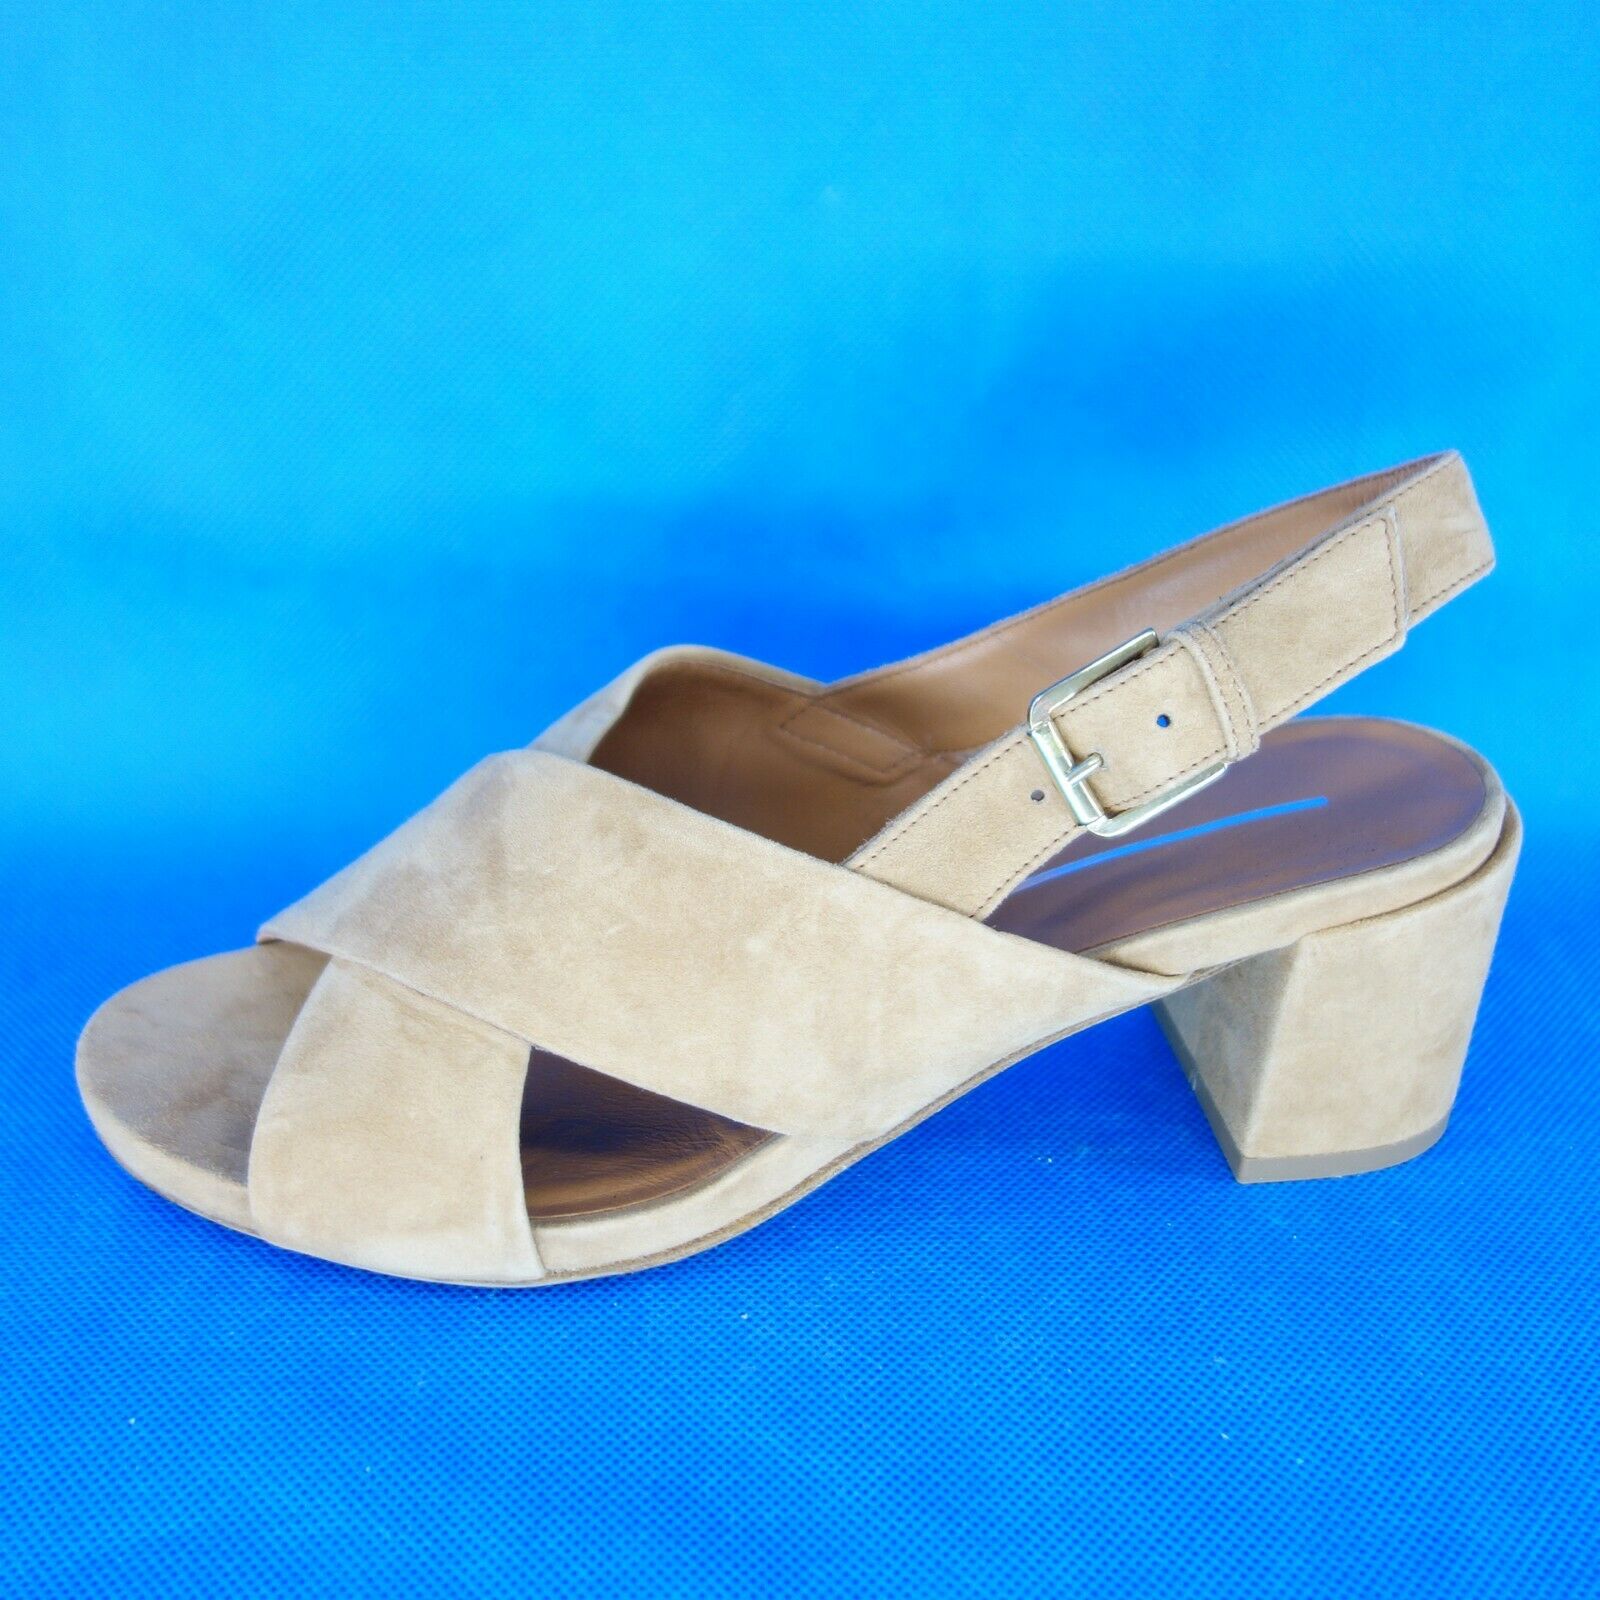 Damen Sommer Schuhe Damenschuhe Slingbacks Sandalen Pumps Sandaletten Leder Neu - EUR 40,5